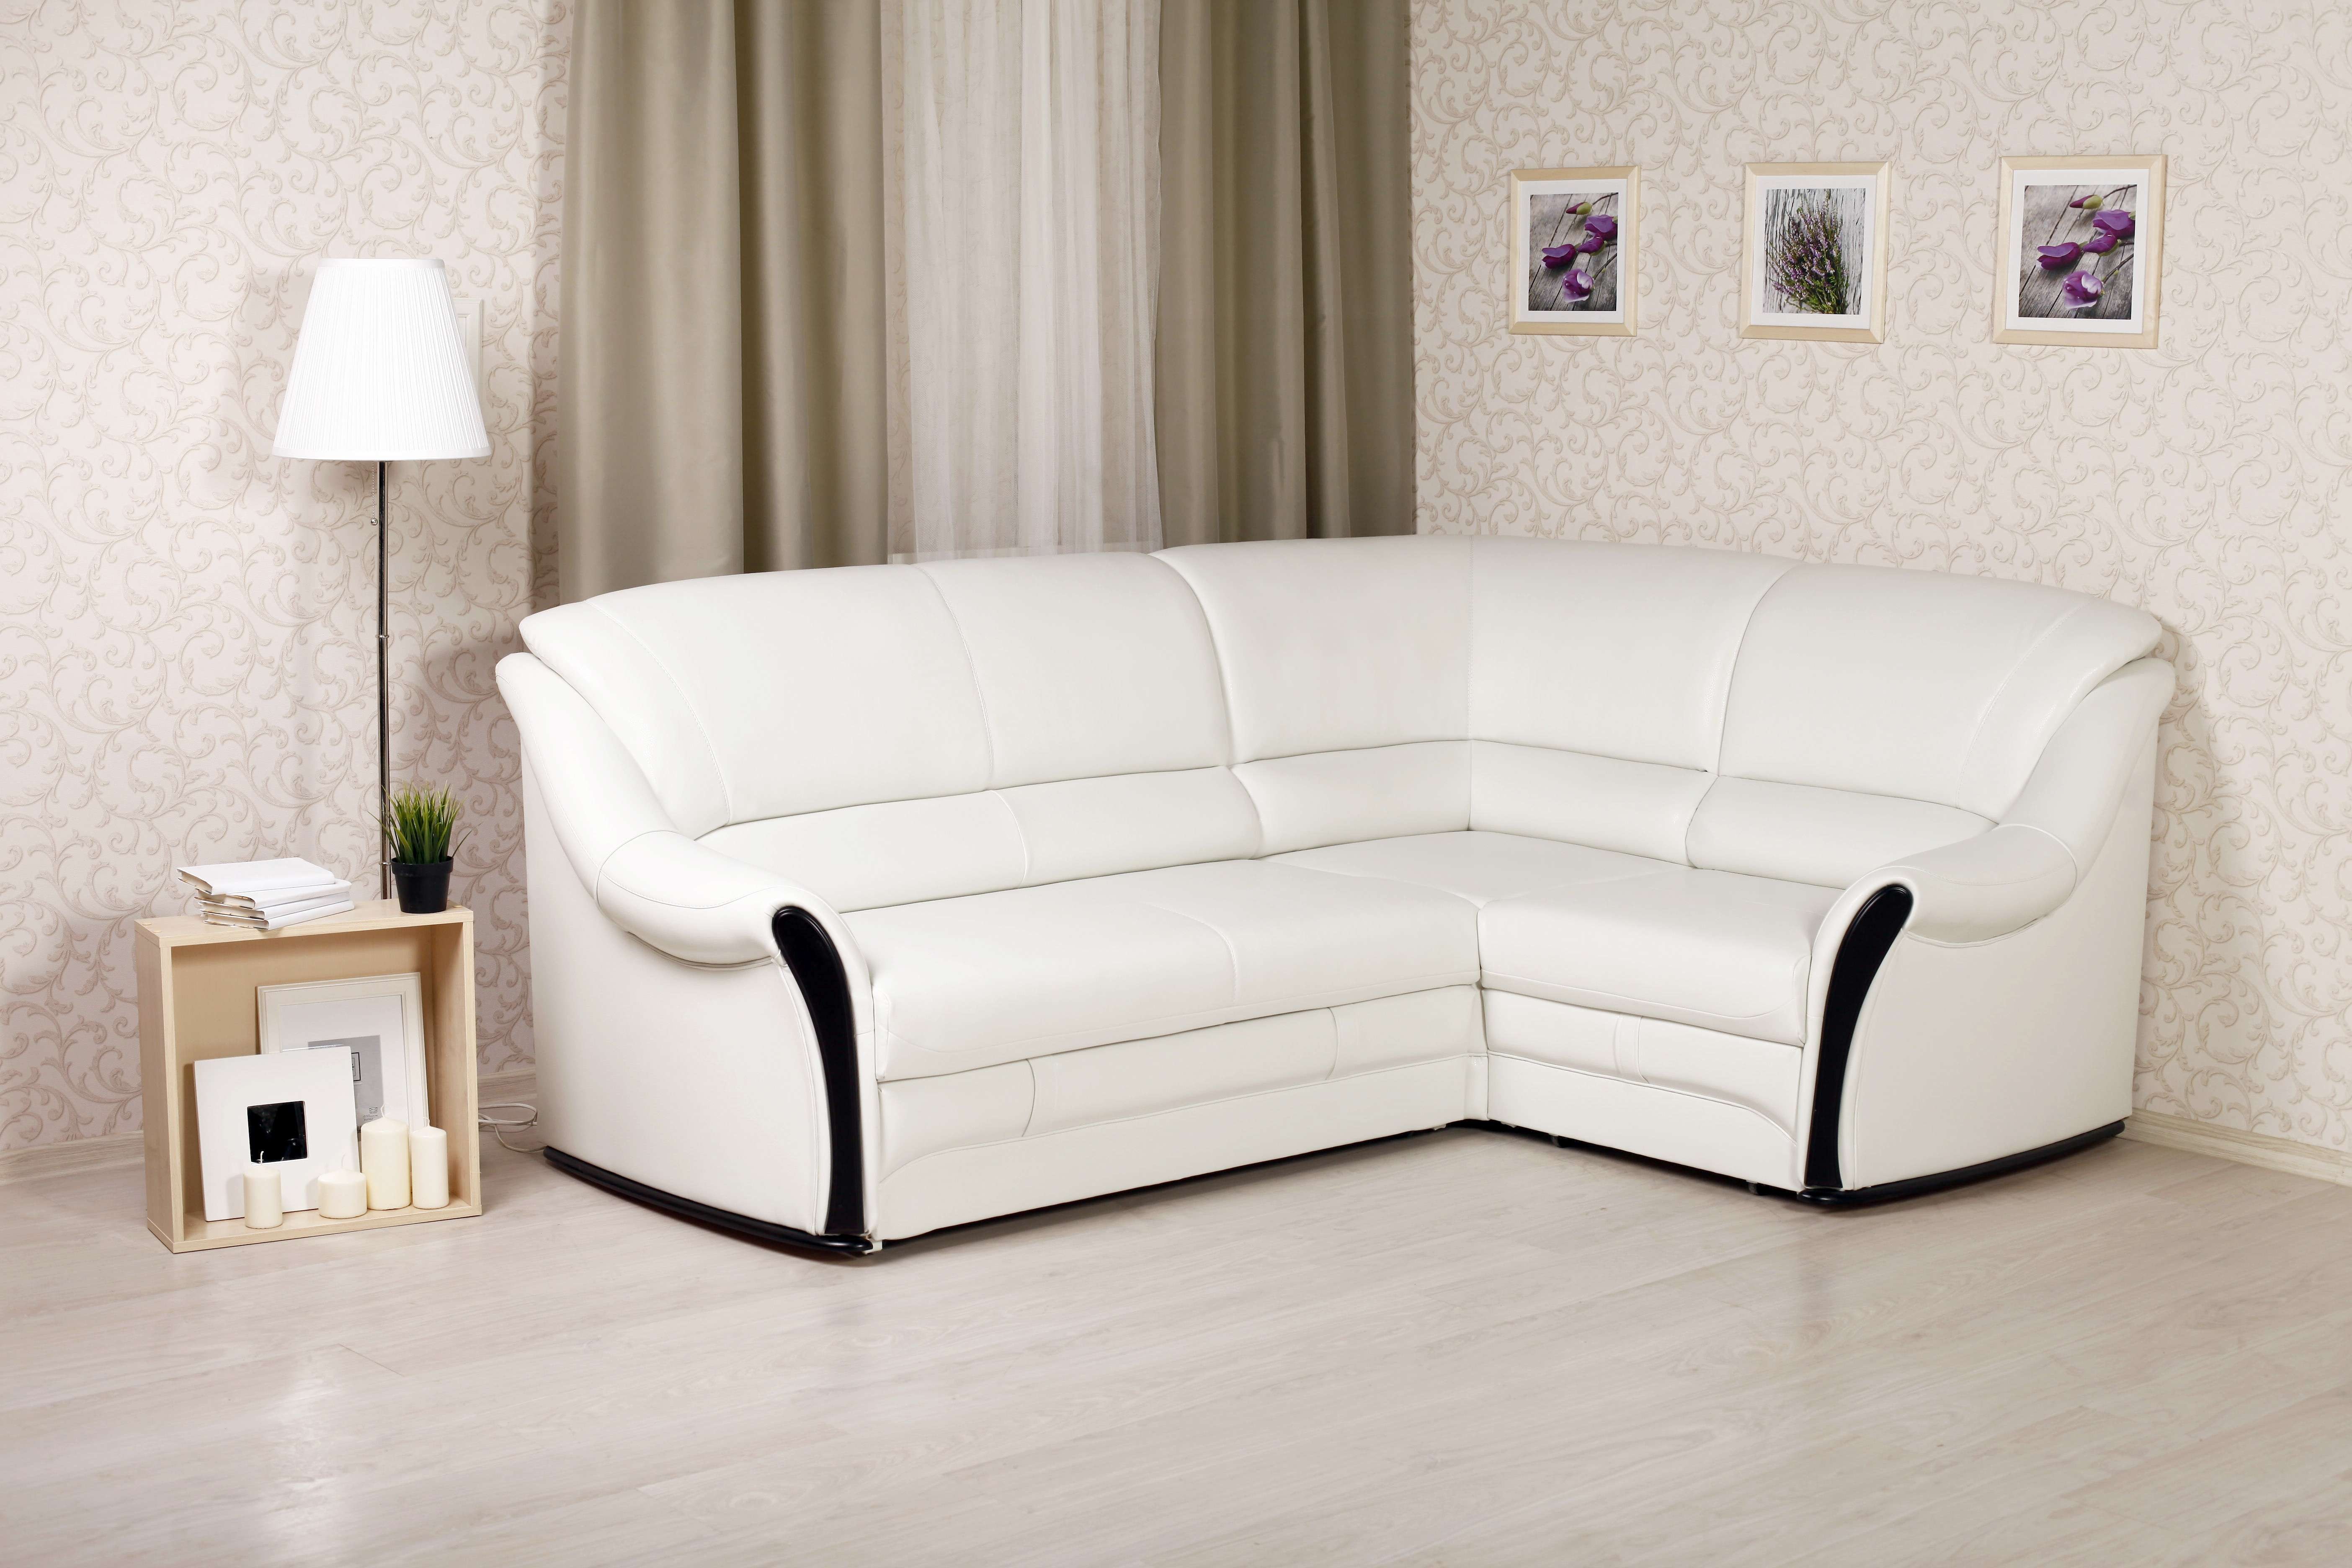 Мебель недорогая угловые диваны. Диван Скандинавия 4home. Угловая мягкая мебель. Белый кожаный диван. Диван уголок кожаный.